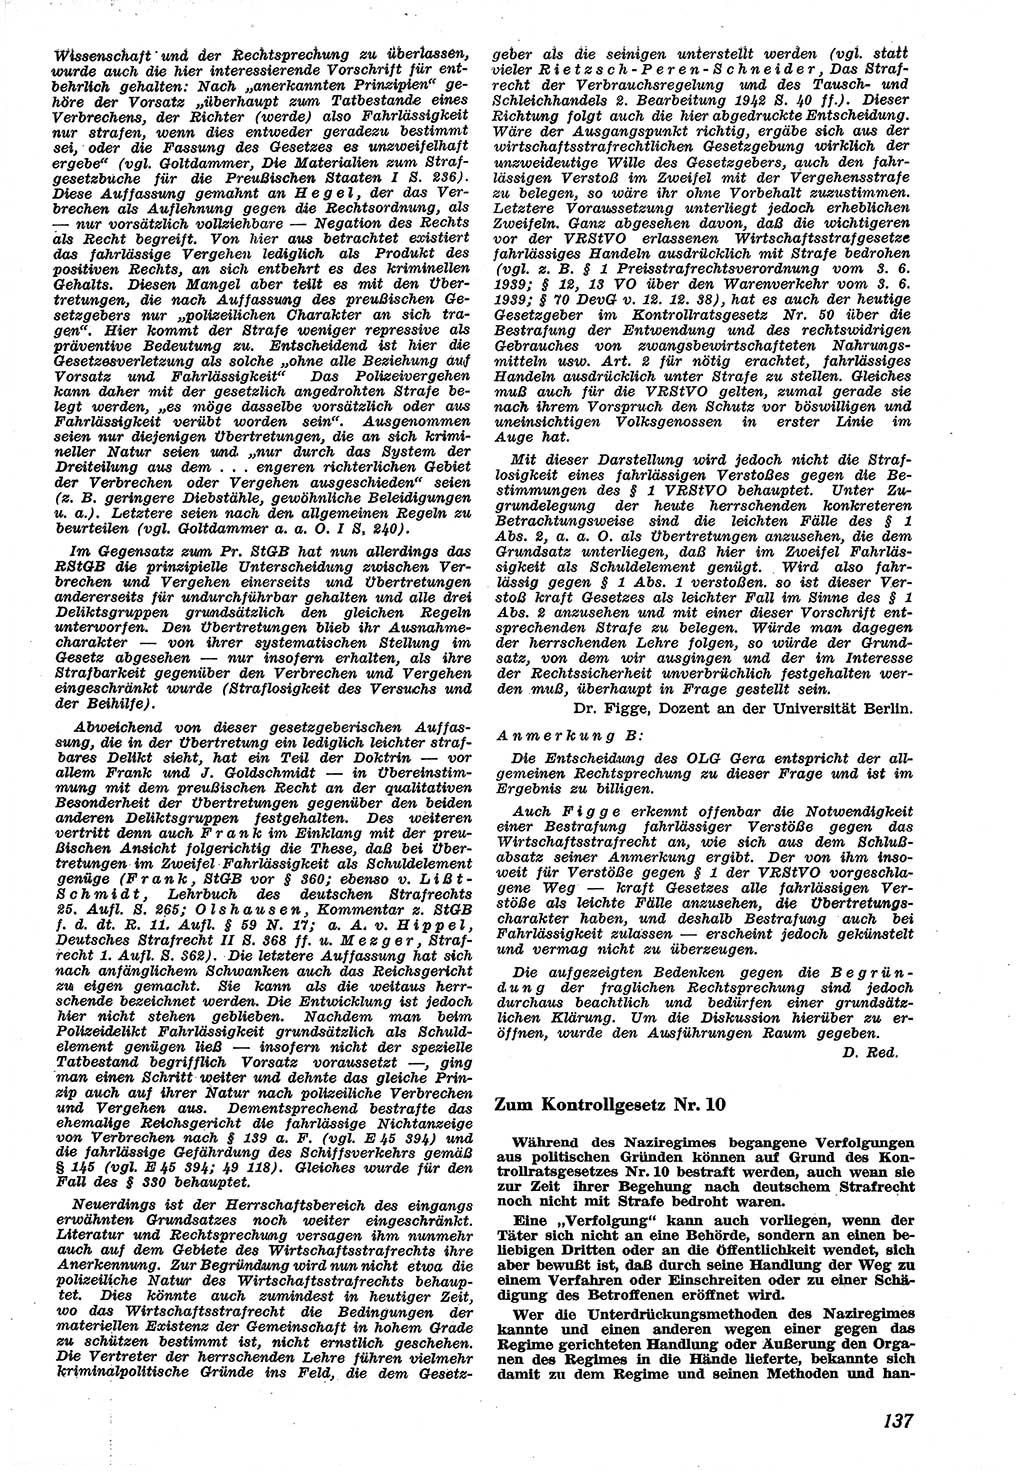 Neue Justiz (NJ), Zeitschrift für Recht und Rechtswissenschaft [Sowjetische Besatzungszone (SBZ) Deutschland], 1. Jahrgang 1947, Seite 137 (NJ SBZ Dtl. 1947, S. 137)